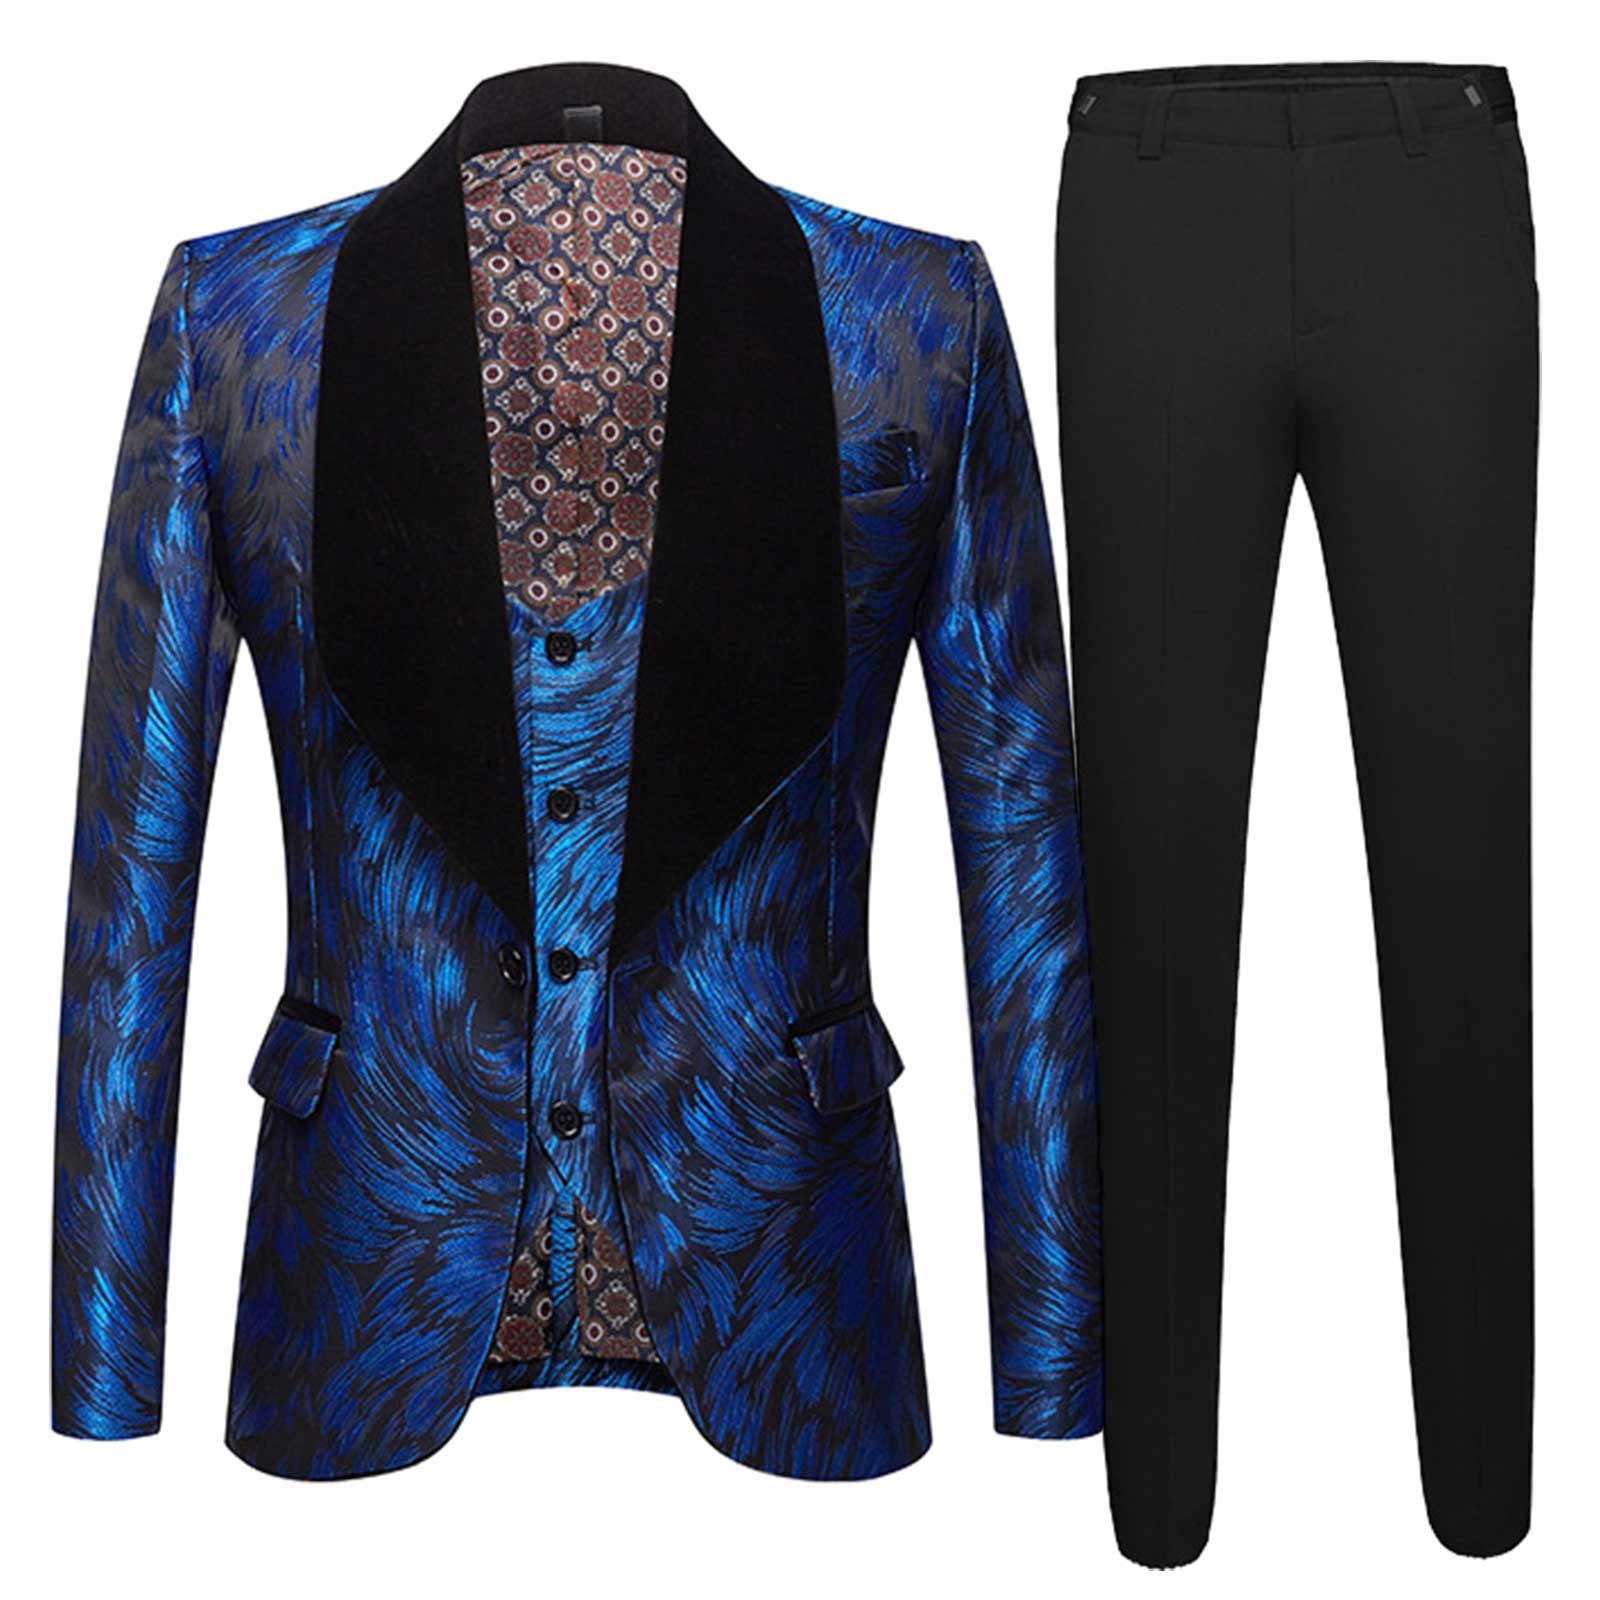 8QIDA Men's Suit Separates Slim Fit Mens Jacquard Suit Bright Silk ...